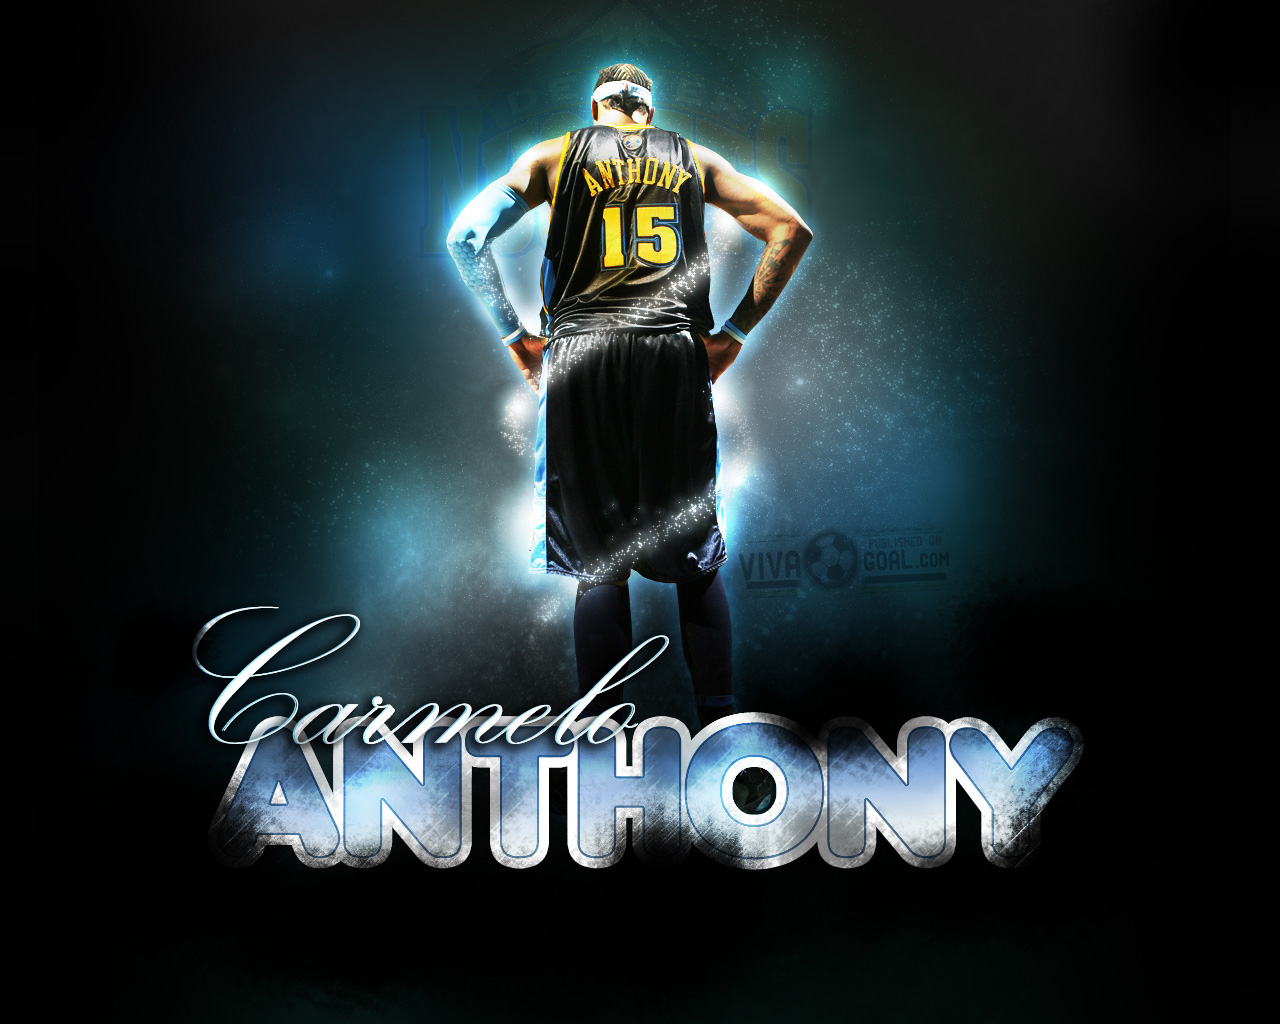 carmelo anthony wallpaper hd,giocatore di pallacanestro,pallacanestro,font,manifesto,streetball